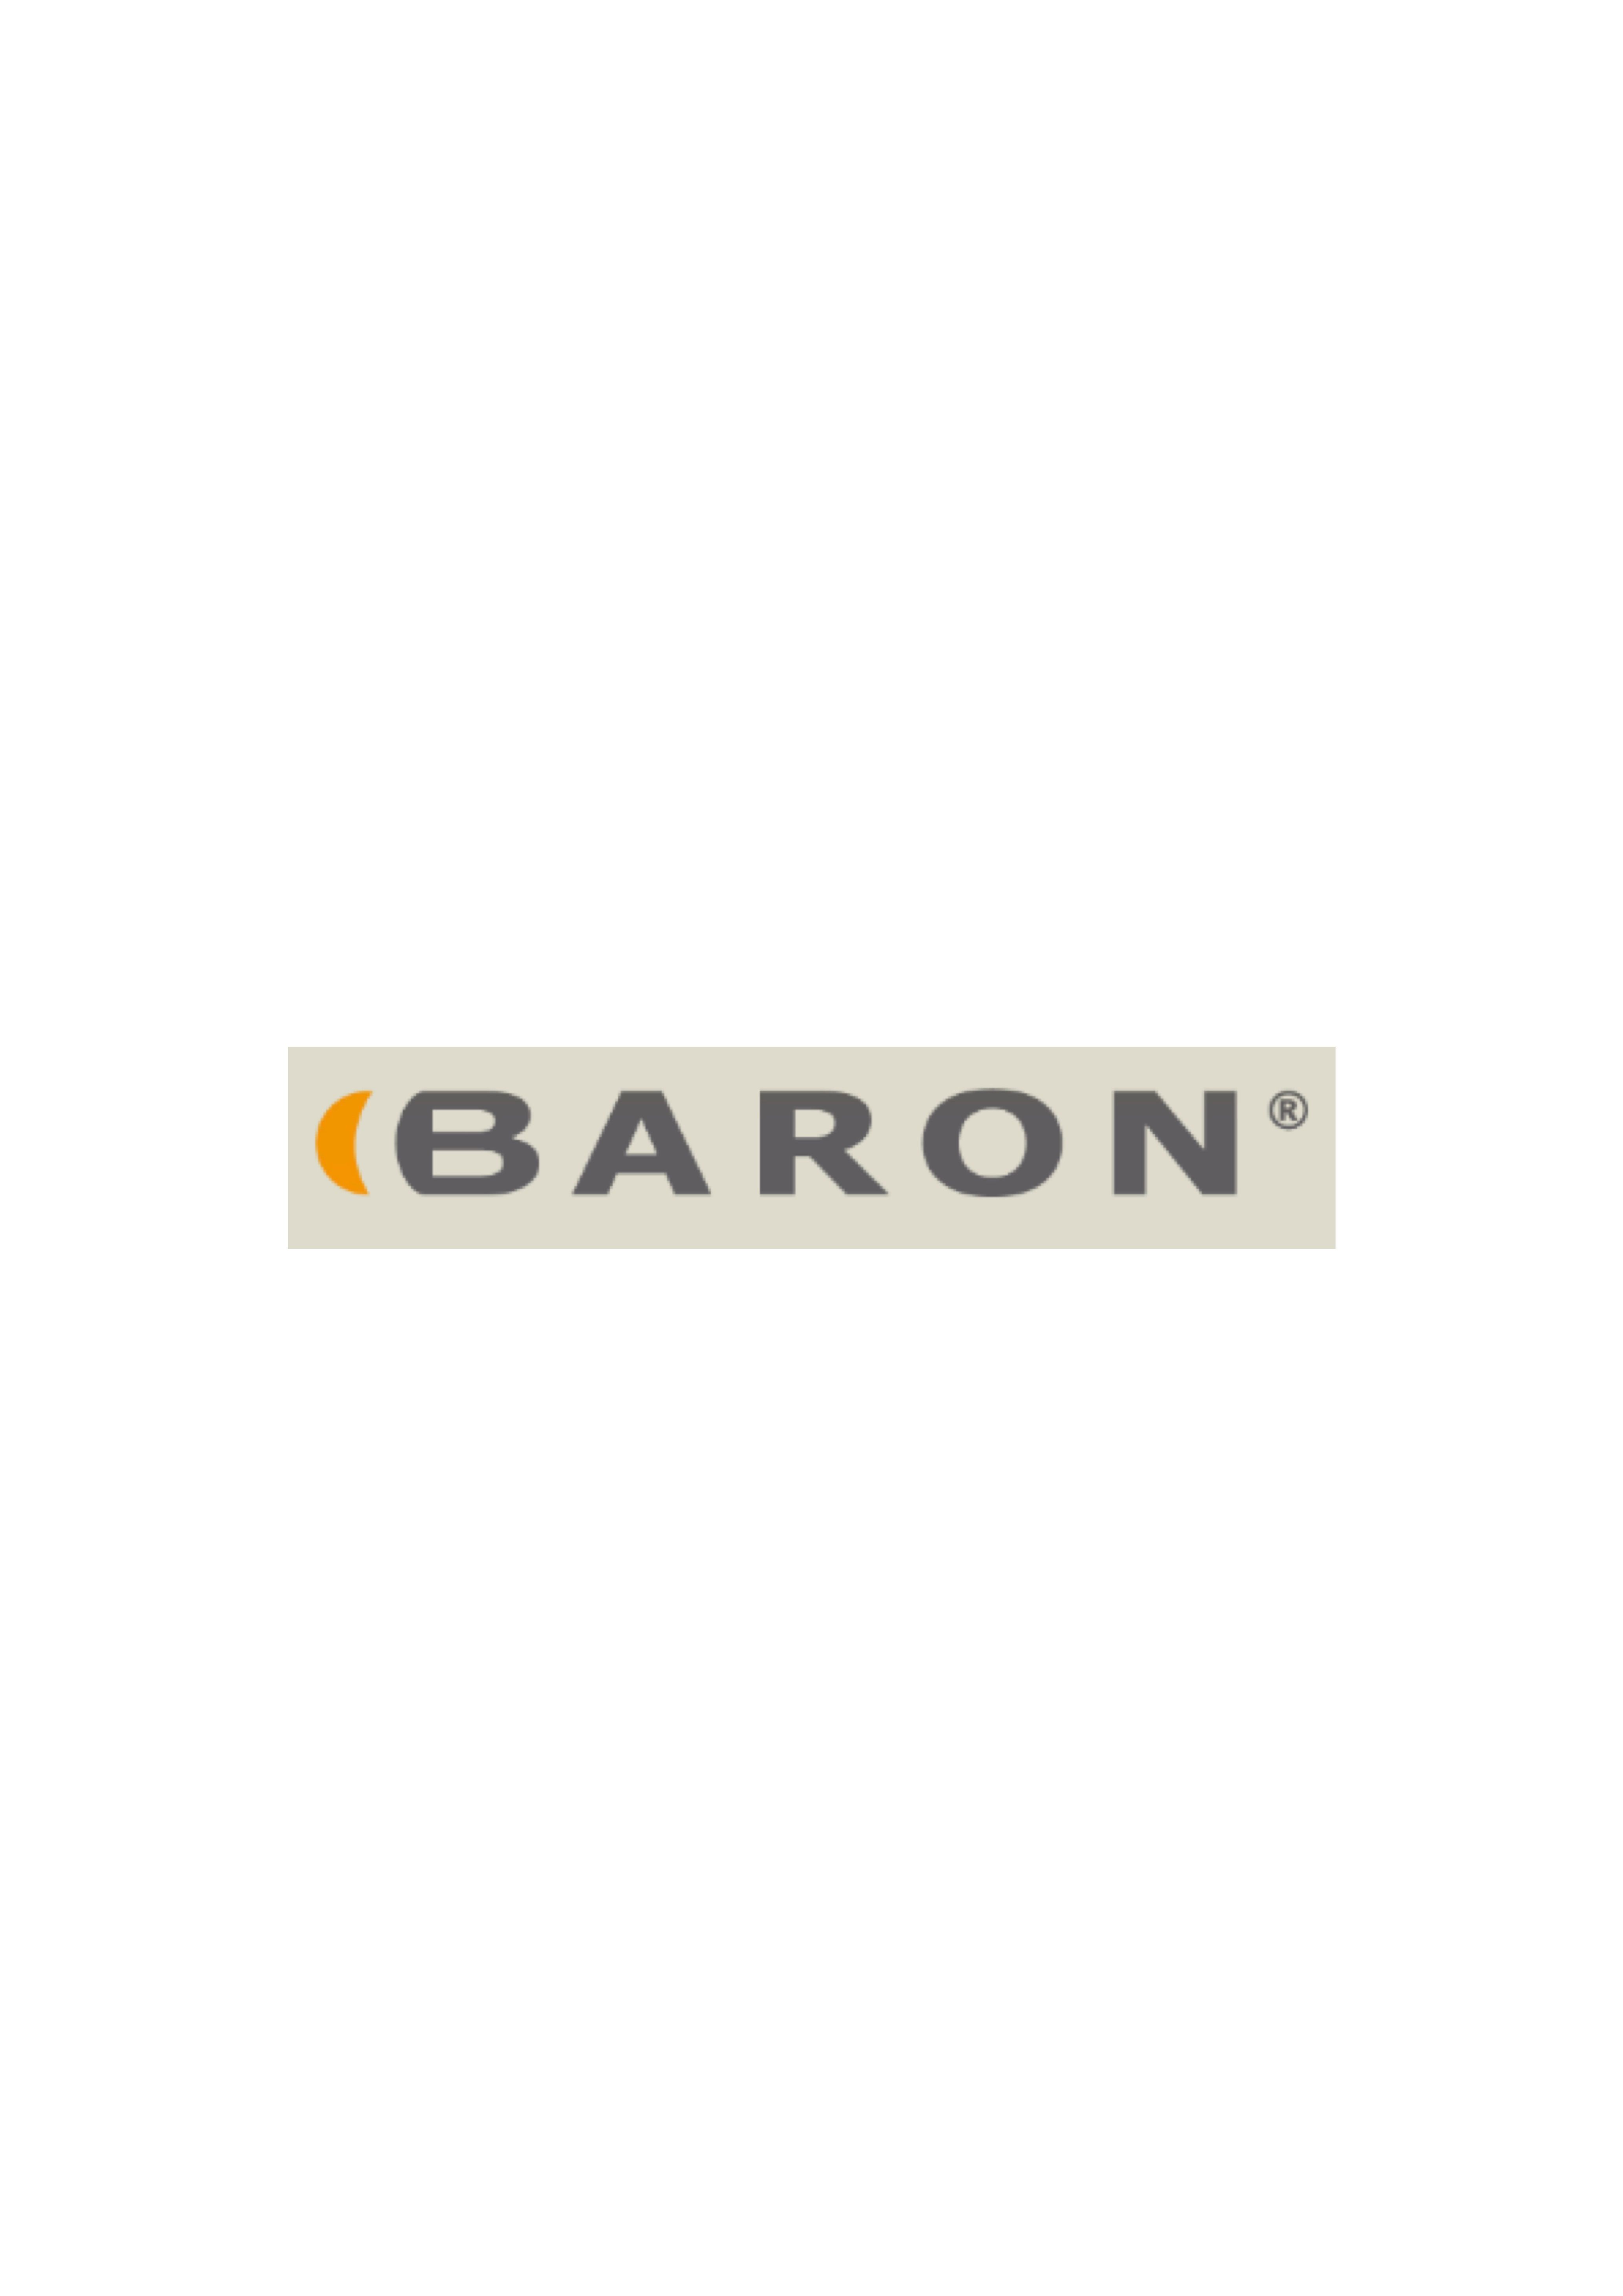 Baron UK